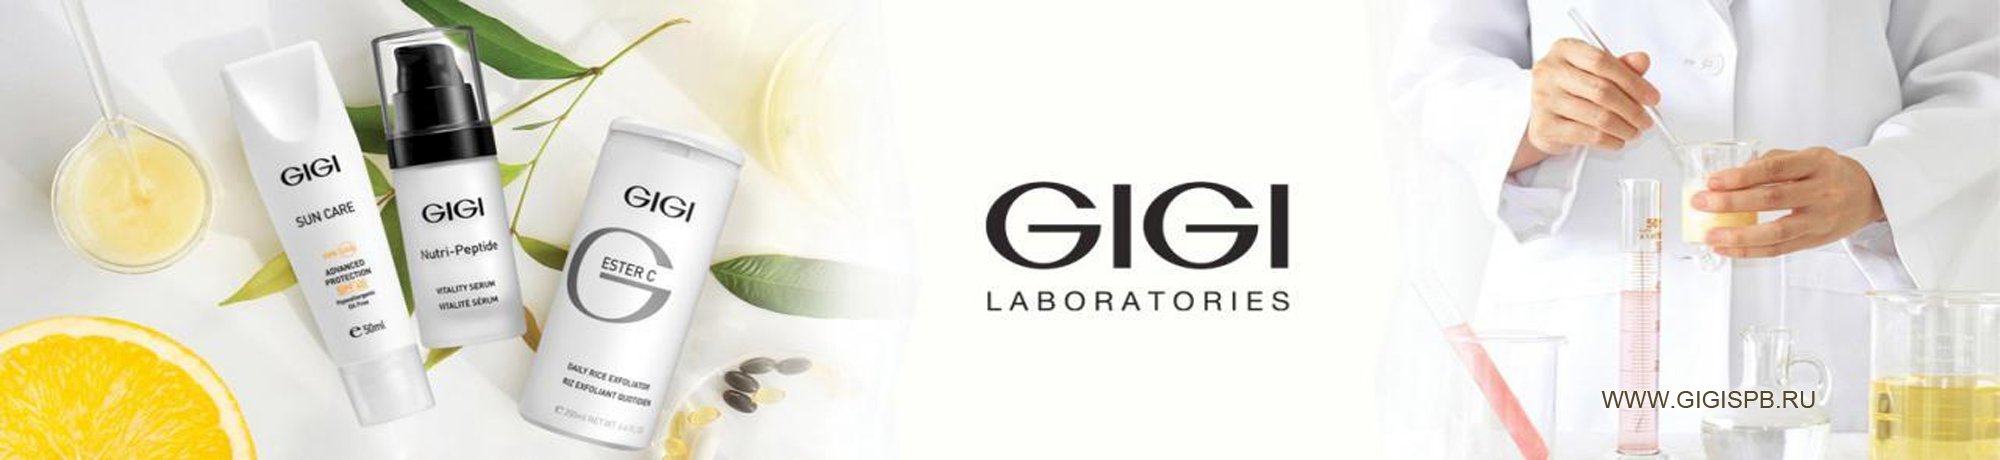 Джи джи сайт косметики. Nutri Peptide Gigi израильская. Gigi Laboratories косметика. Gigi логотип. Gigi косметика баннер.